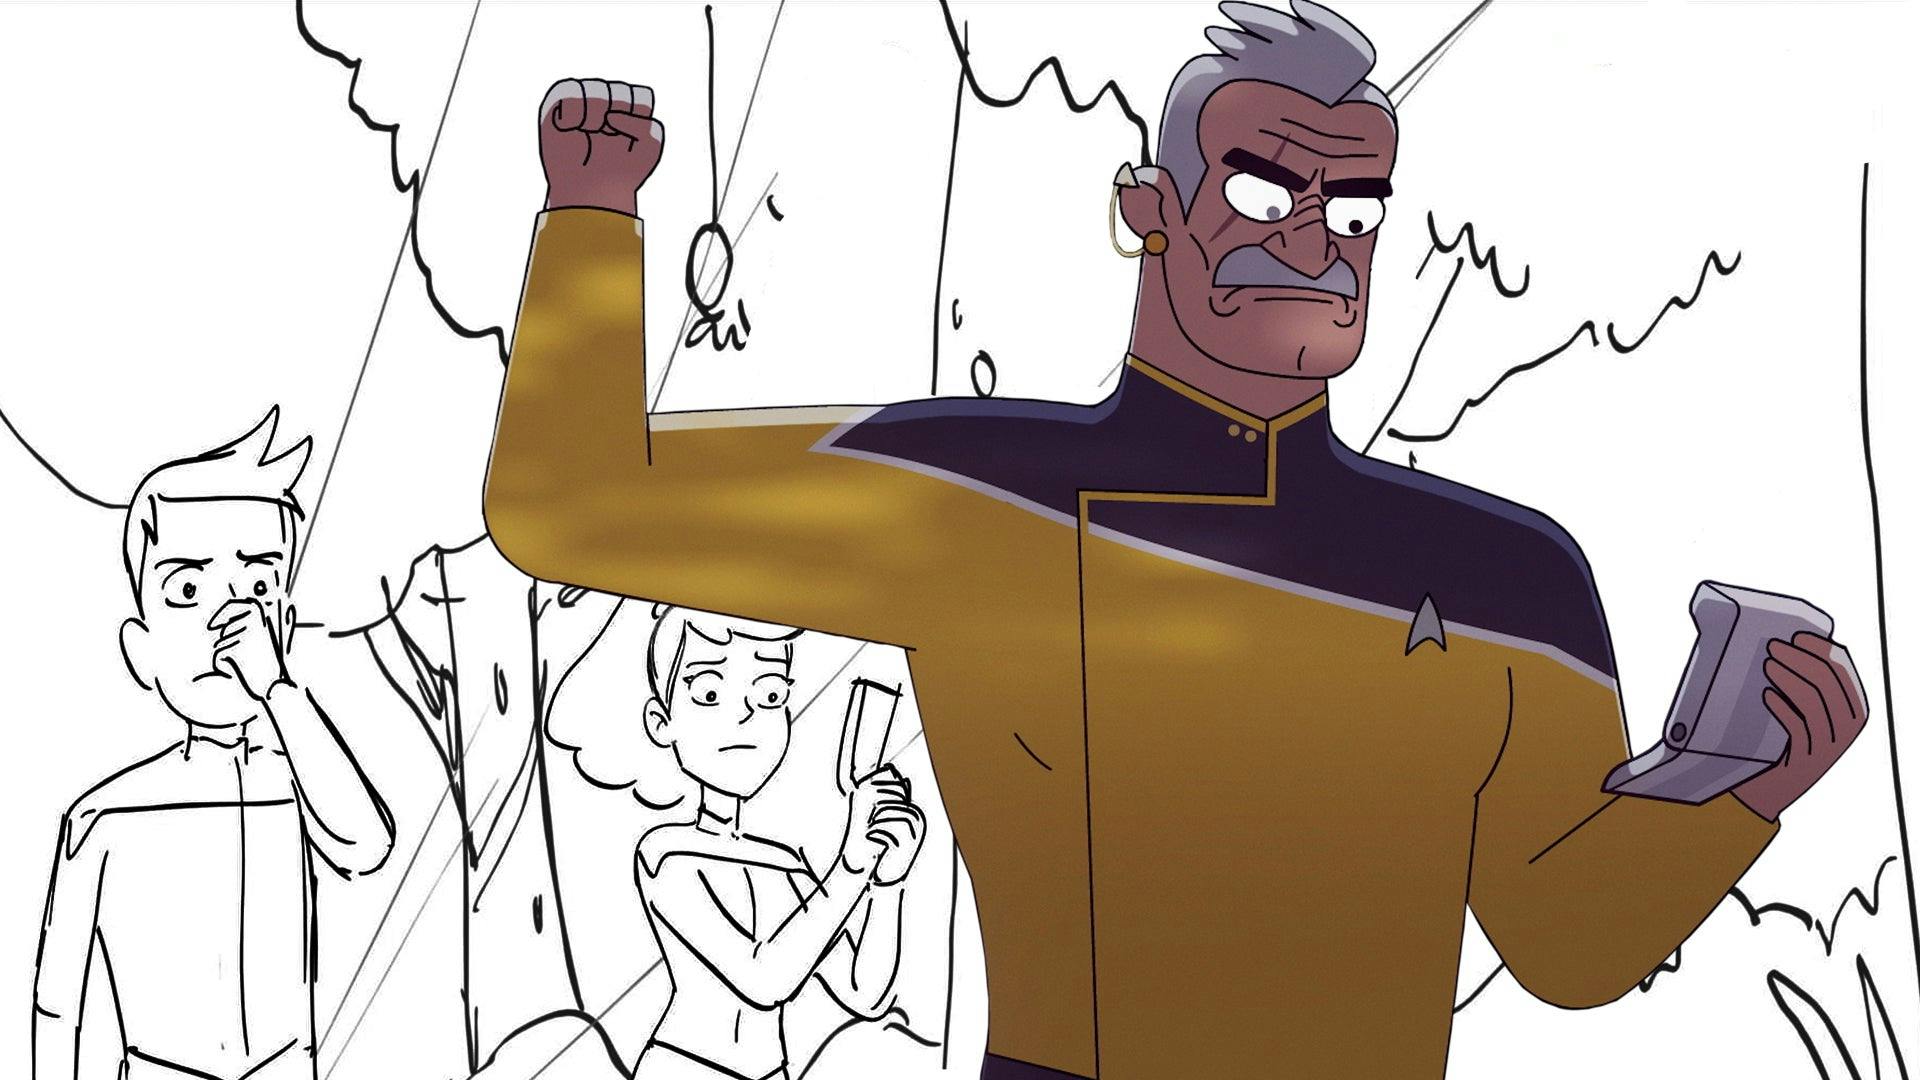 Animatics | Star Trek: Lower Decks - 'Mugato, Gumato' - Season 2, Episode 4